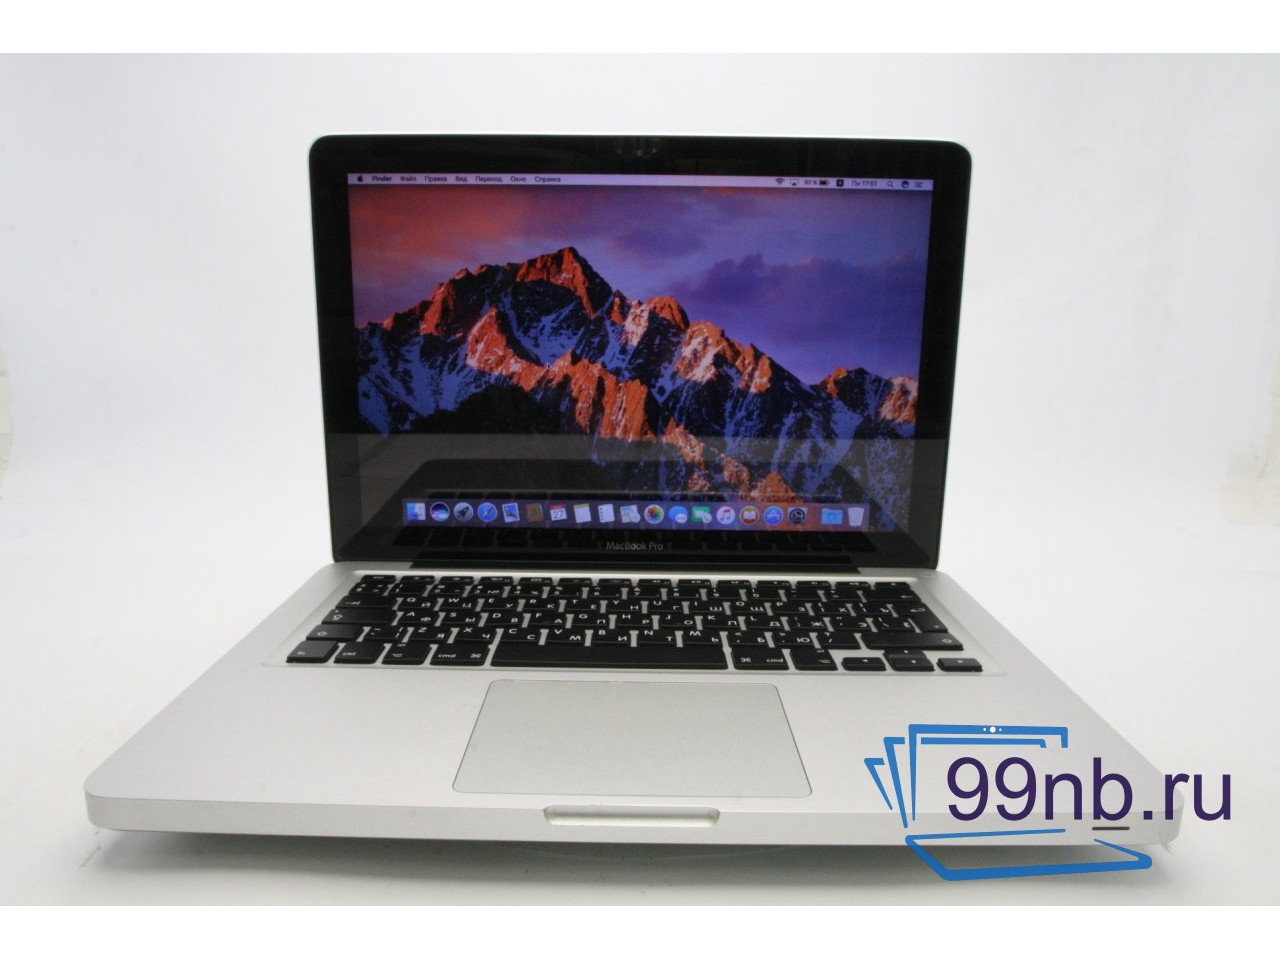 Macbook pro 13 2011